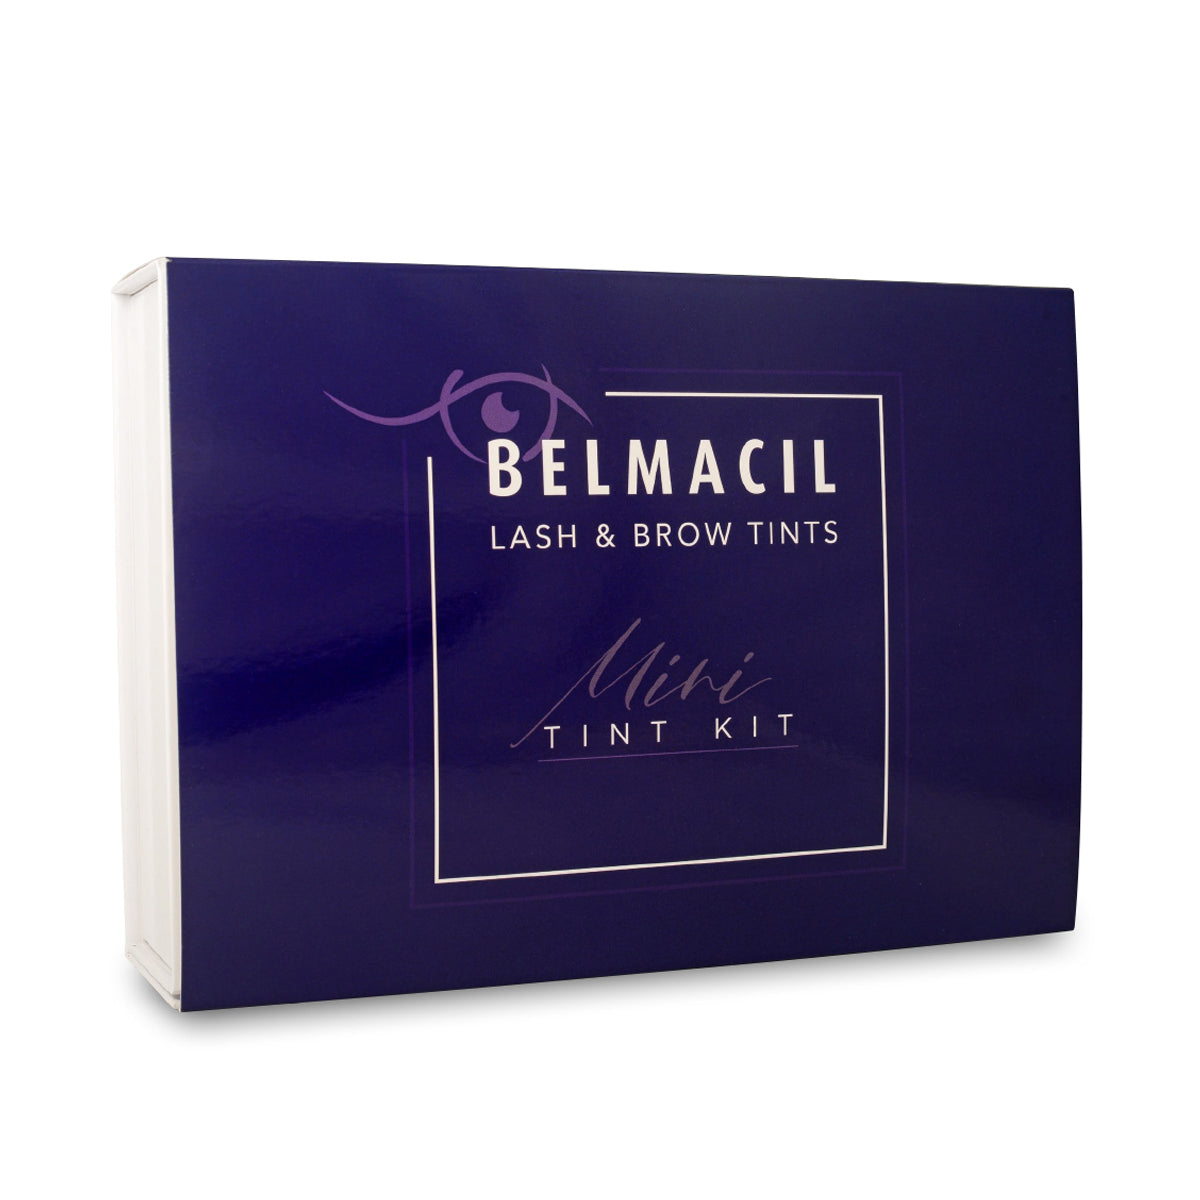 Belmacil Mini Tint Kit packaging